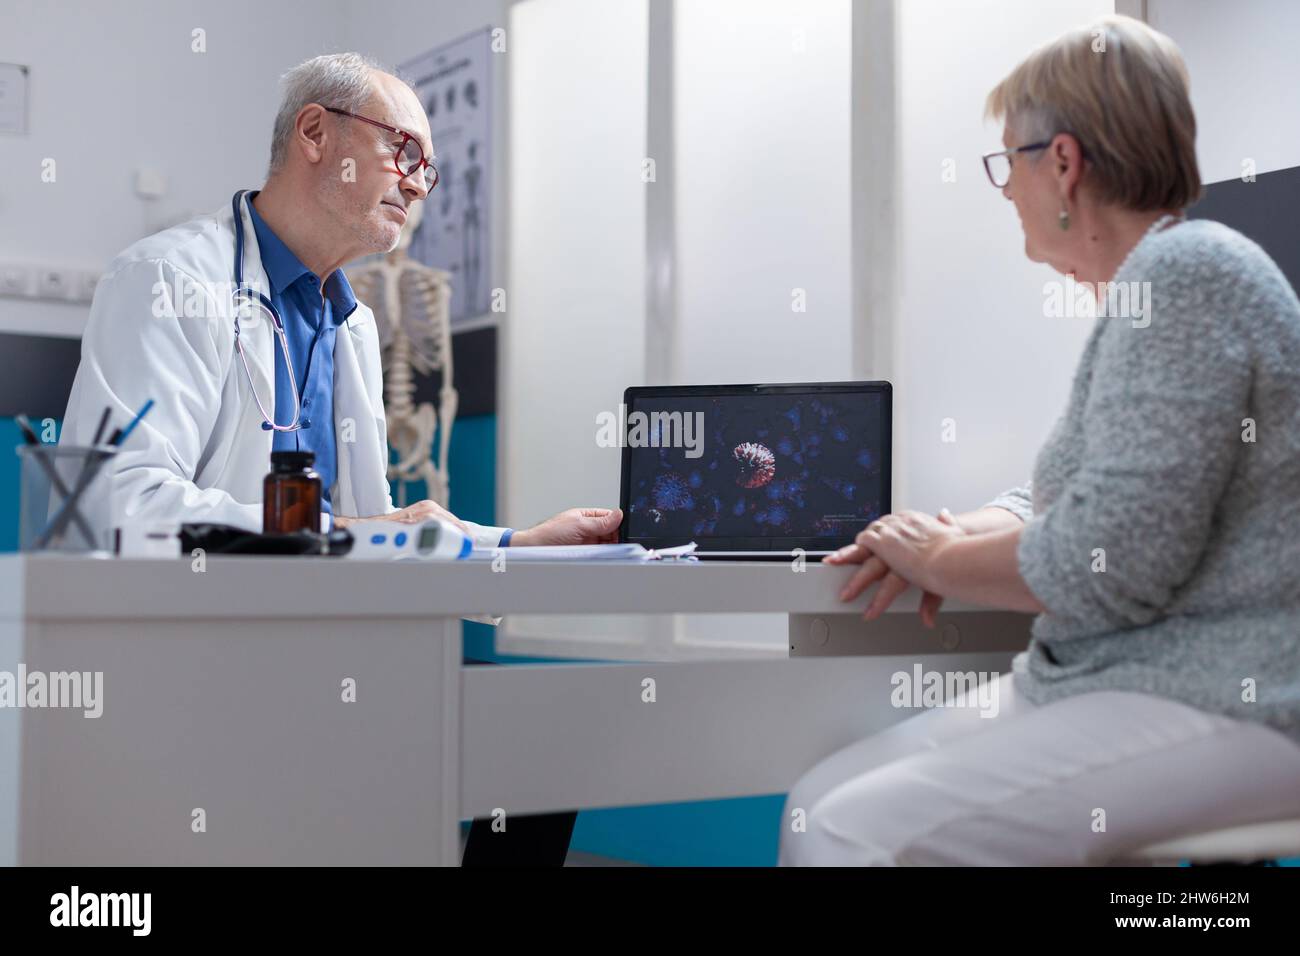 Illustration de la bactérie du coronavirus sur un ordinateur portable au patient dans l'armoire. Spécialiste médical et patient regardant l'écran d'ordinateur avec la représentation visuelle de la pandémie de Covid 19. Banque D'Images